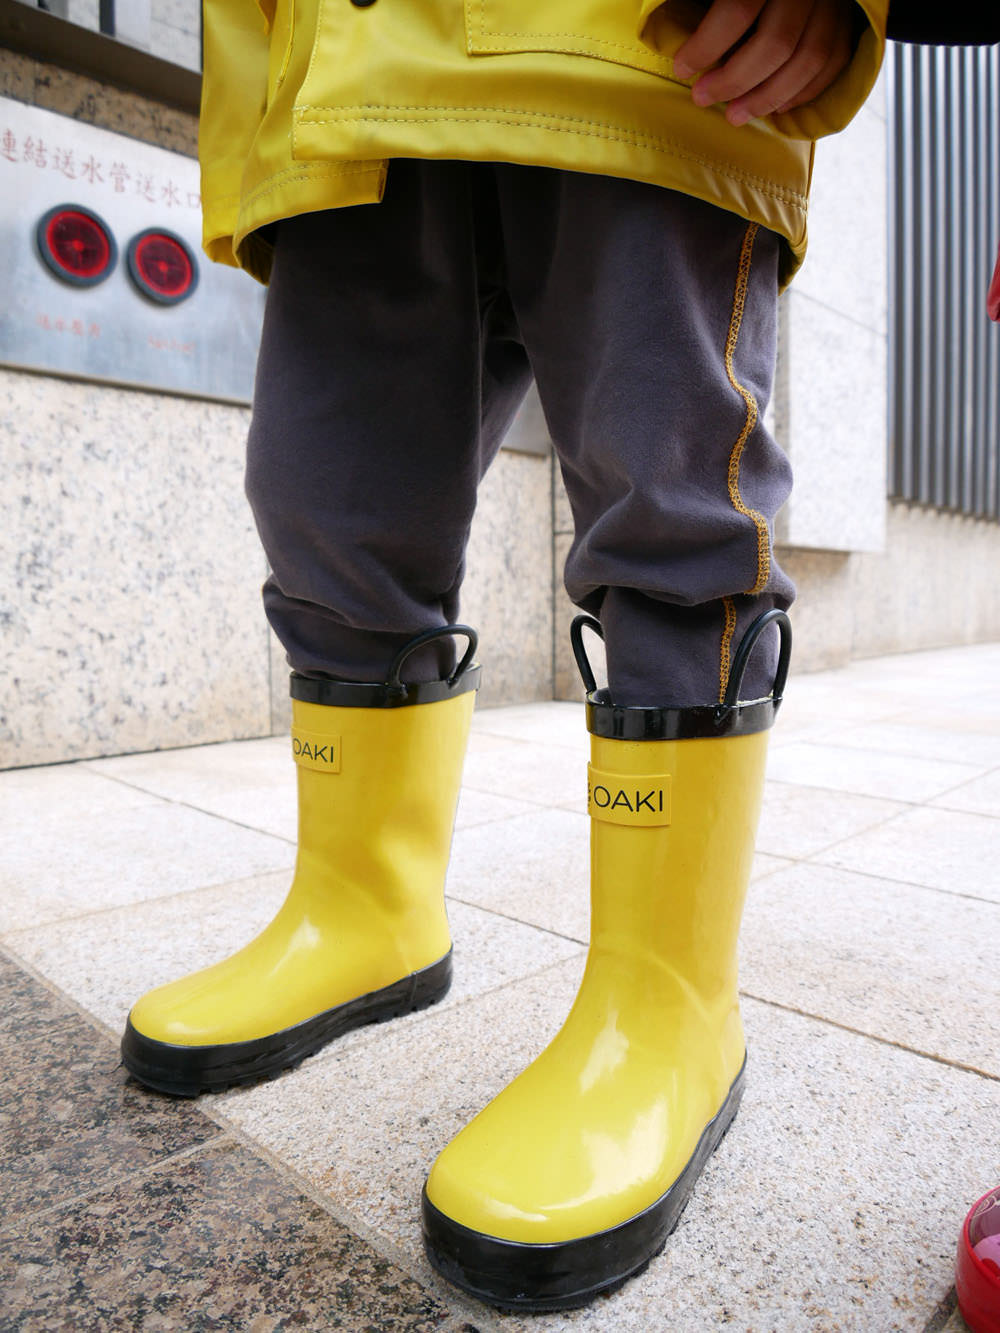 [啾團] 日本KIU雨天及露營超適合的雨具!讓下雨天出門也好看又時尚!雨傘/雨衣/雨鞋+日本WPC空氣感兒童雨衣+日本KidForet 兒童雨鞋